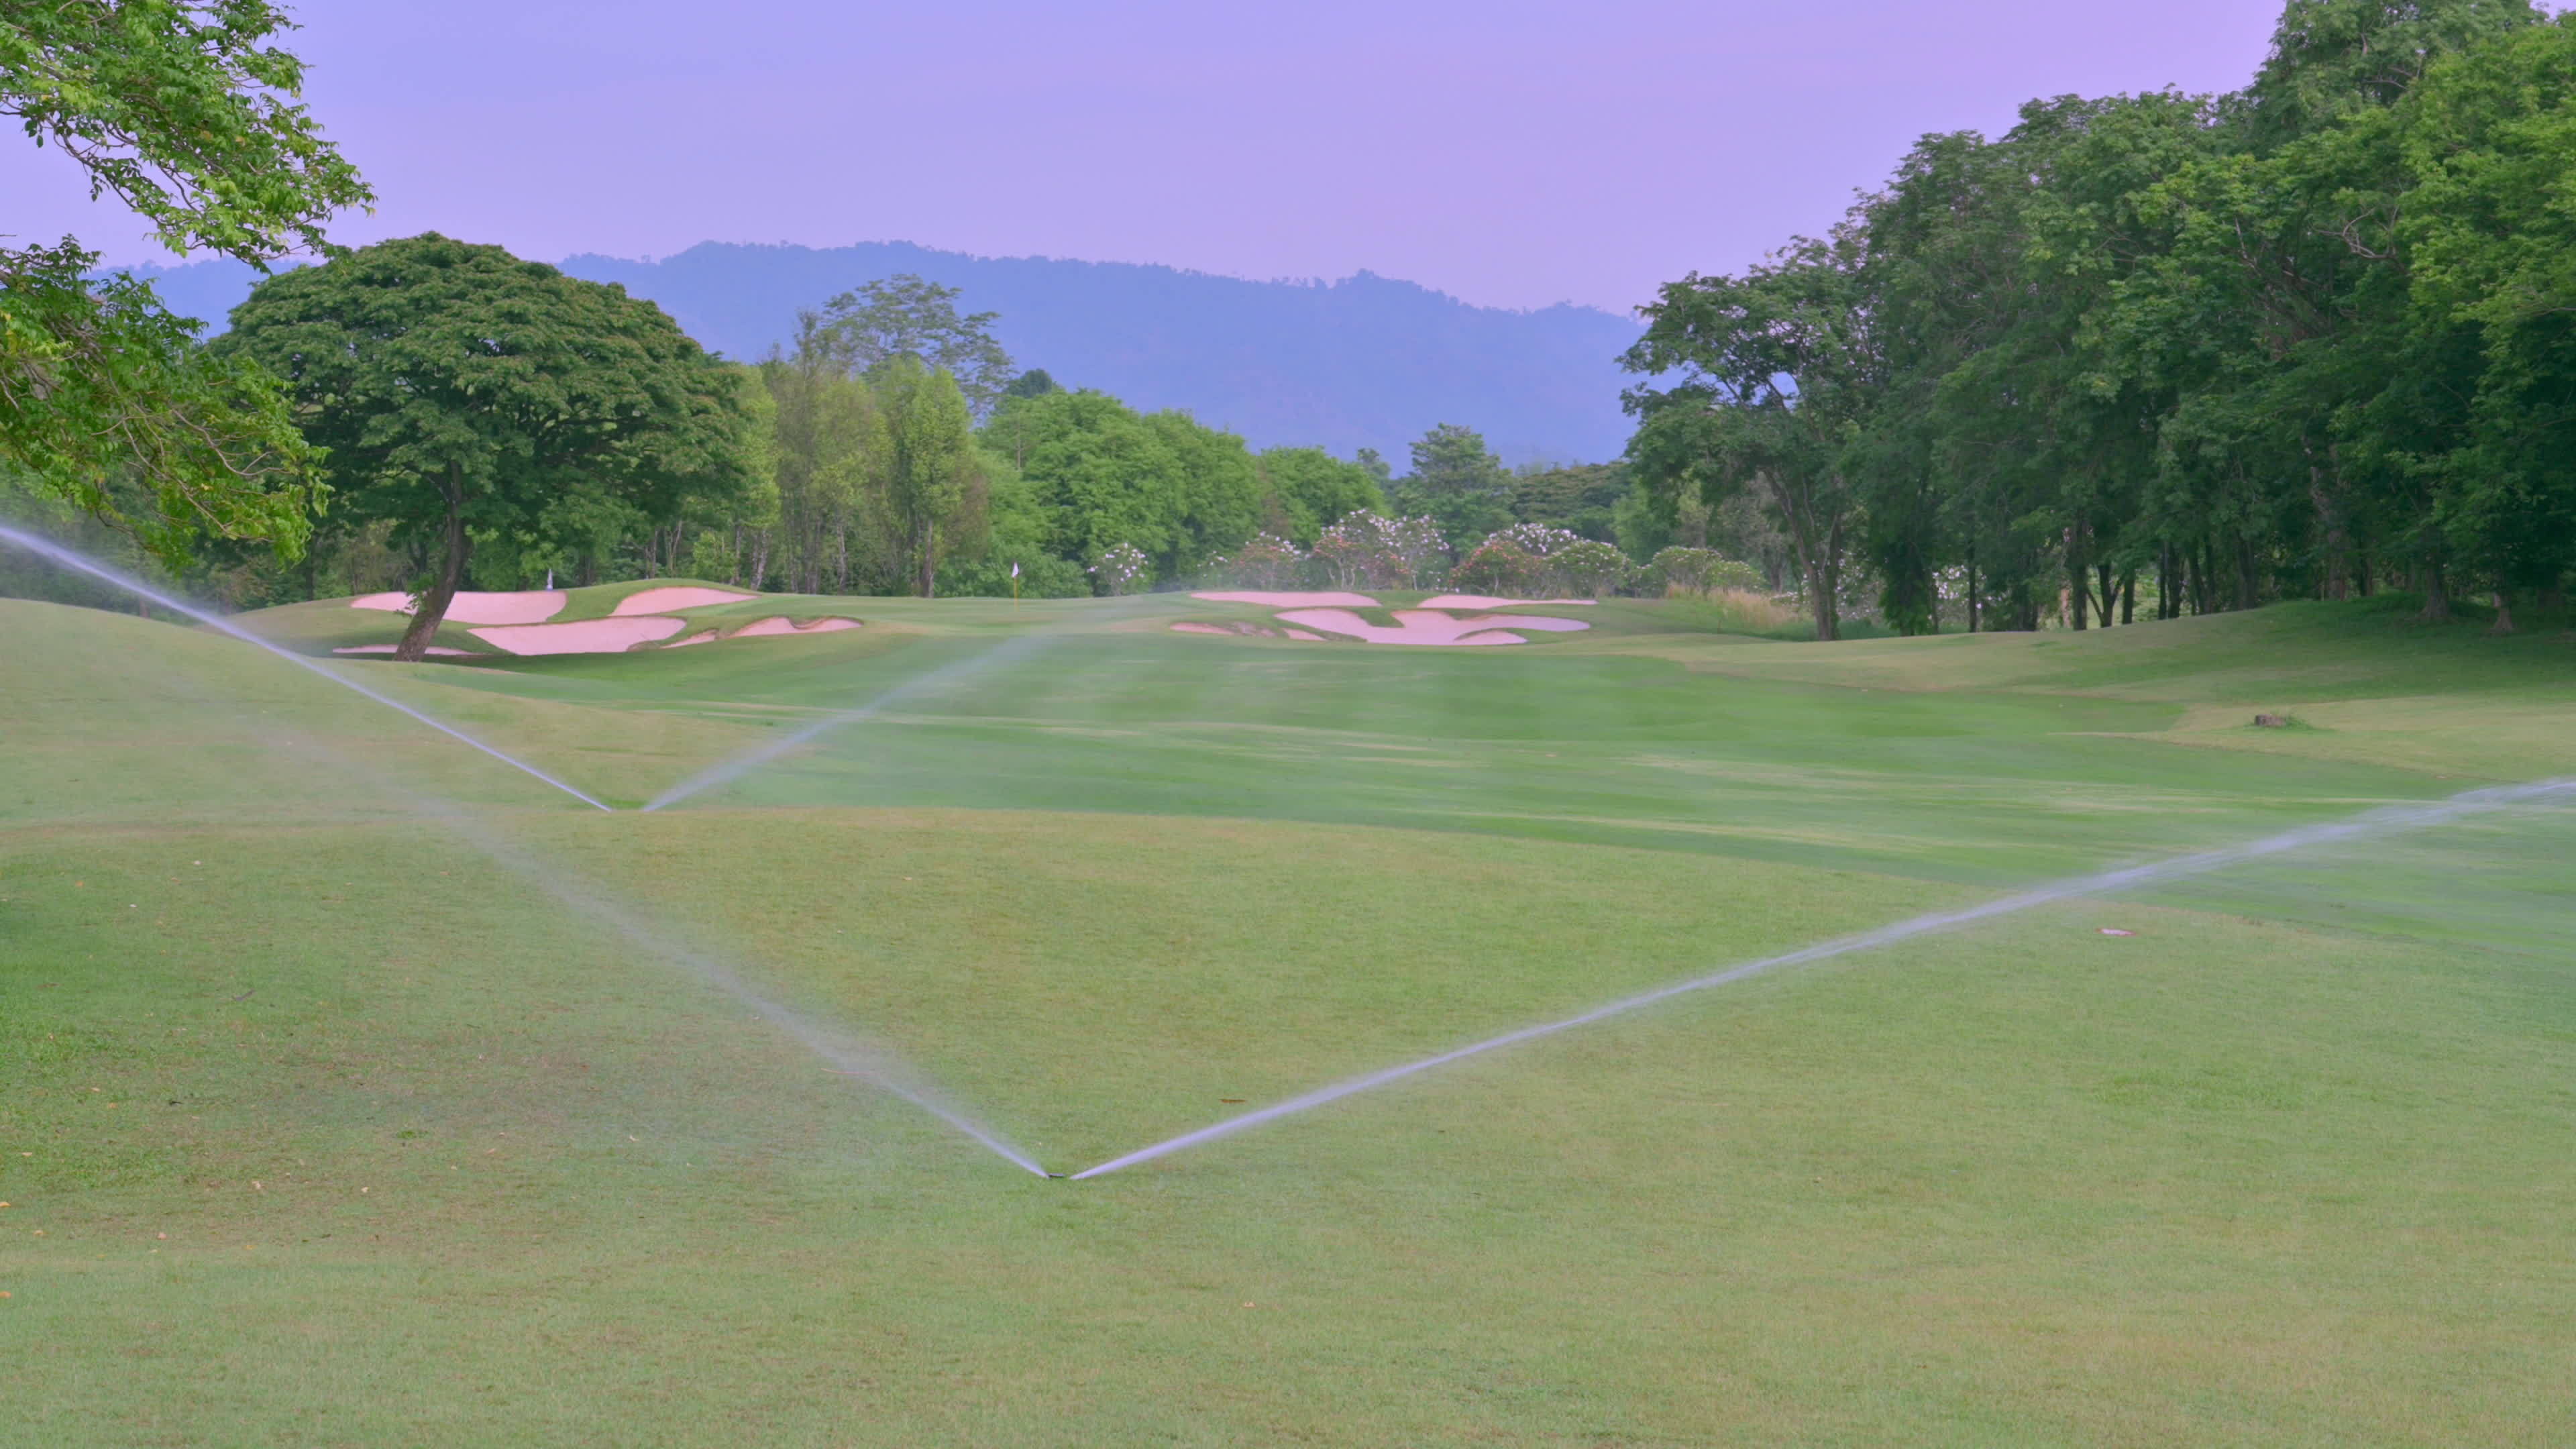 Großer Wasserstrahl Sprinkler auf dem Golfplatz am Nachmittag